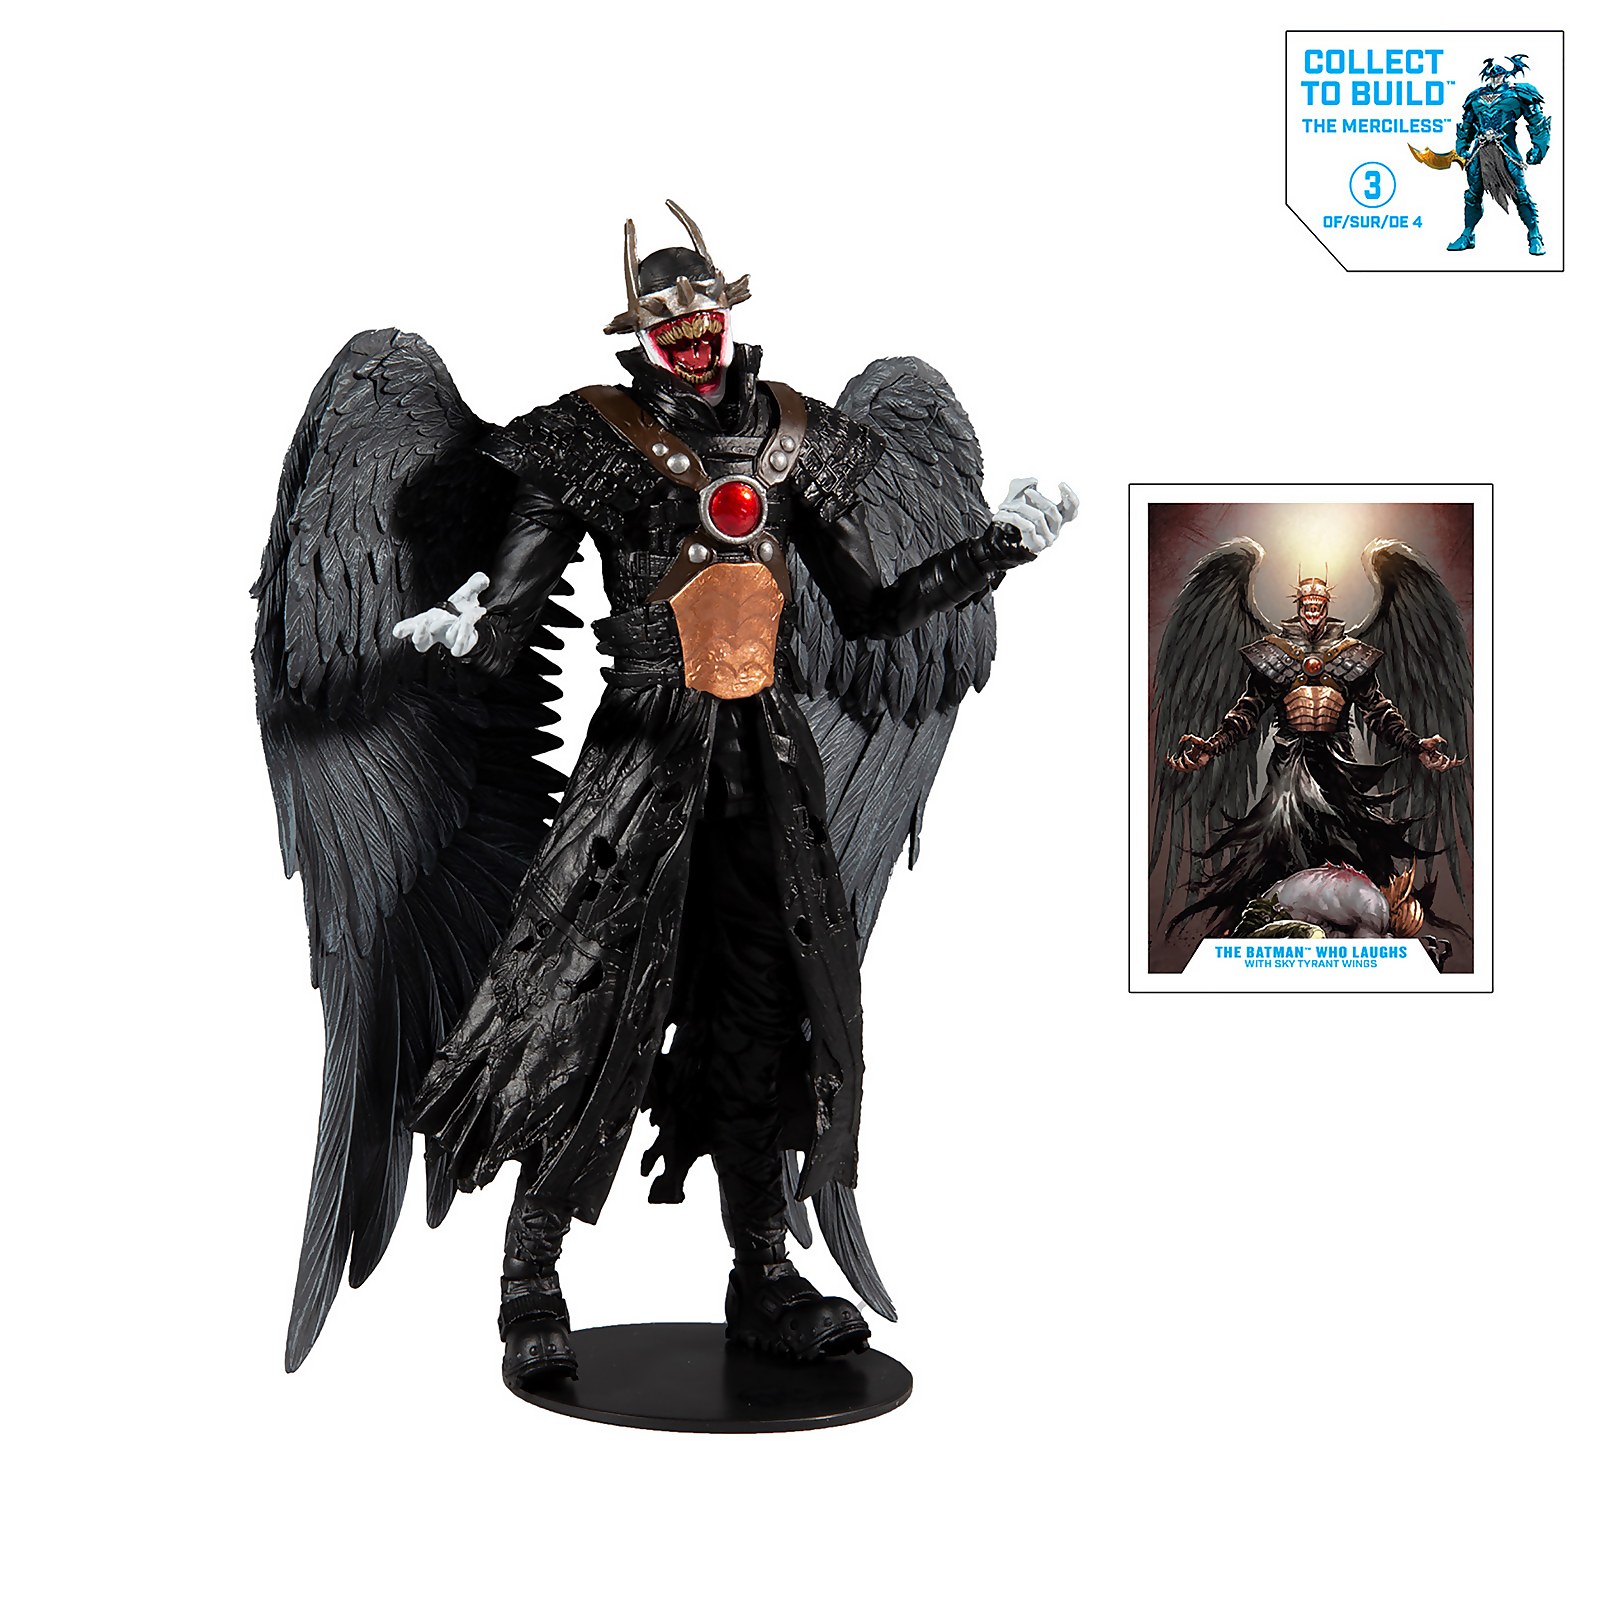 McFarlane Toys DC Multiverse Build-A 7  Action Figure - Wv2 - Batman Who Laughs (Hawkman) Action Figure